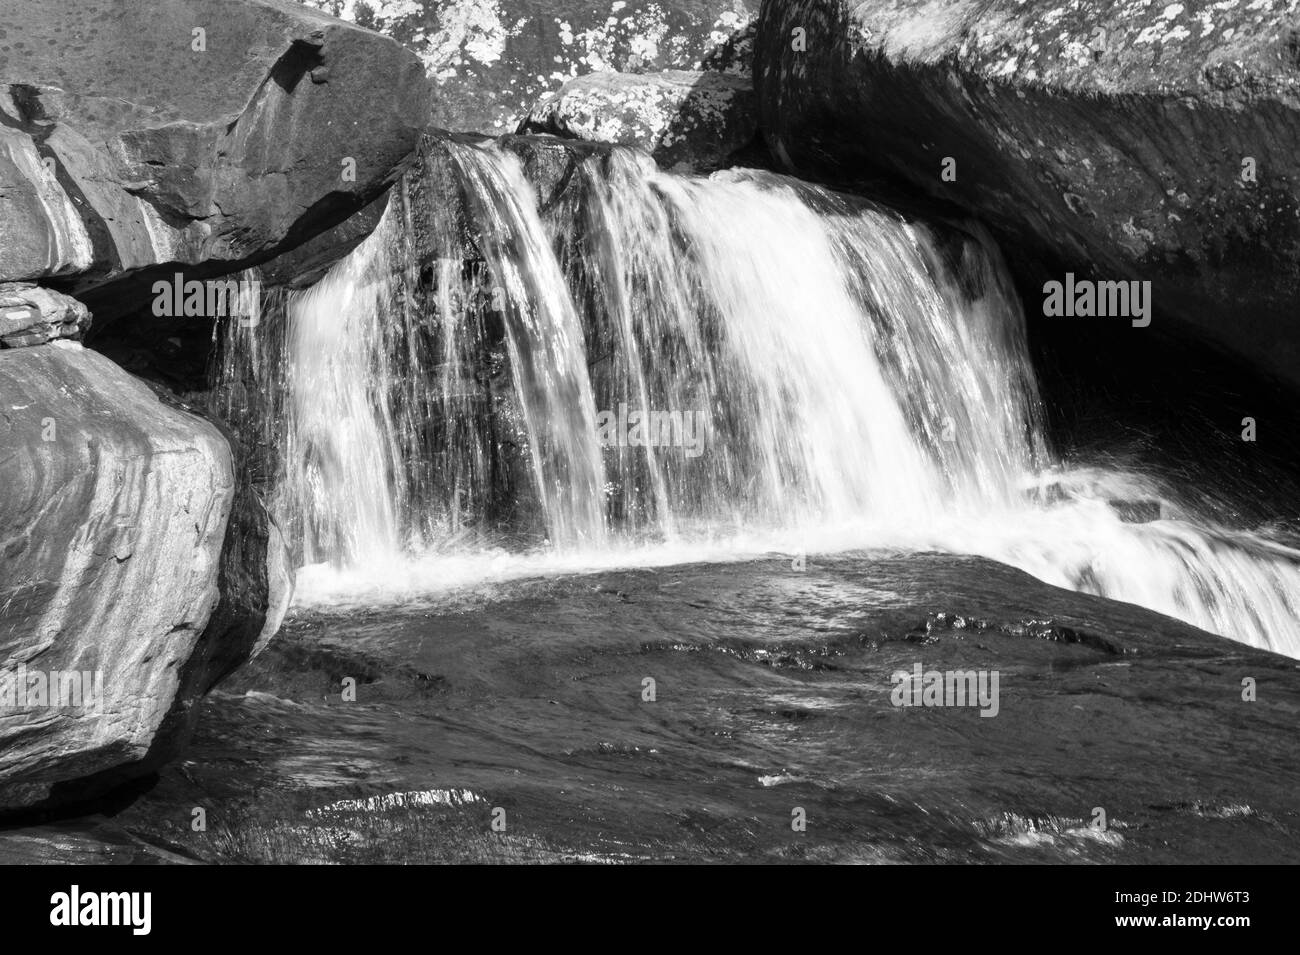 Paesaggio bianco e nero in un paesaggio di cascate soleggiate e fluenti con acqua forte che scorre. La scena è avvolta da una formazione rocciosa mozzafiato Foto Stock